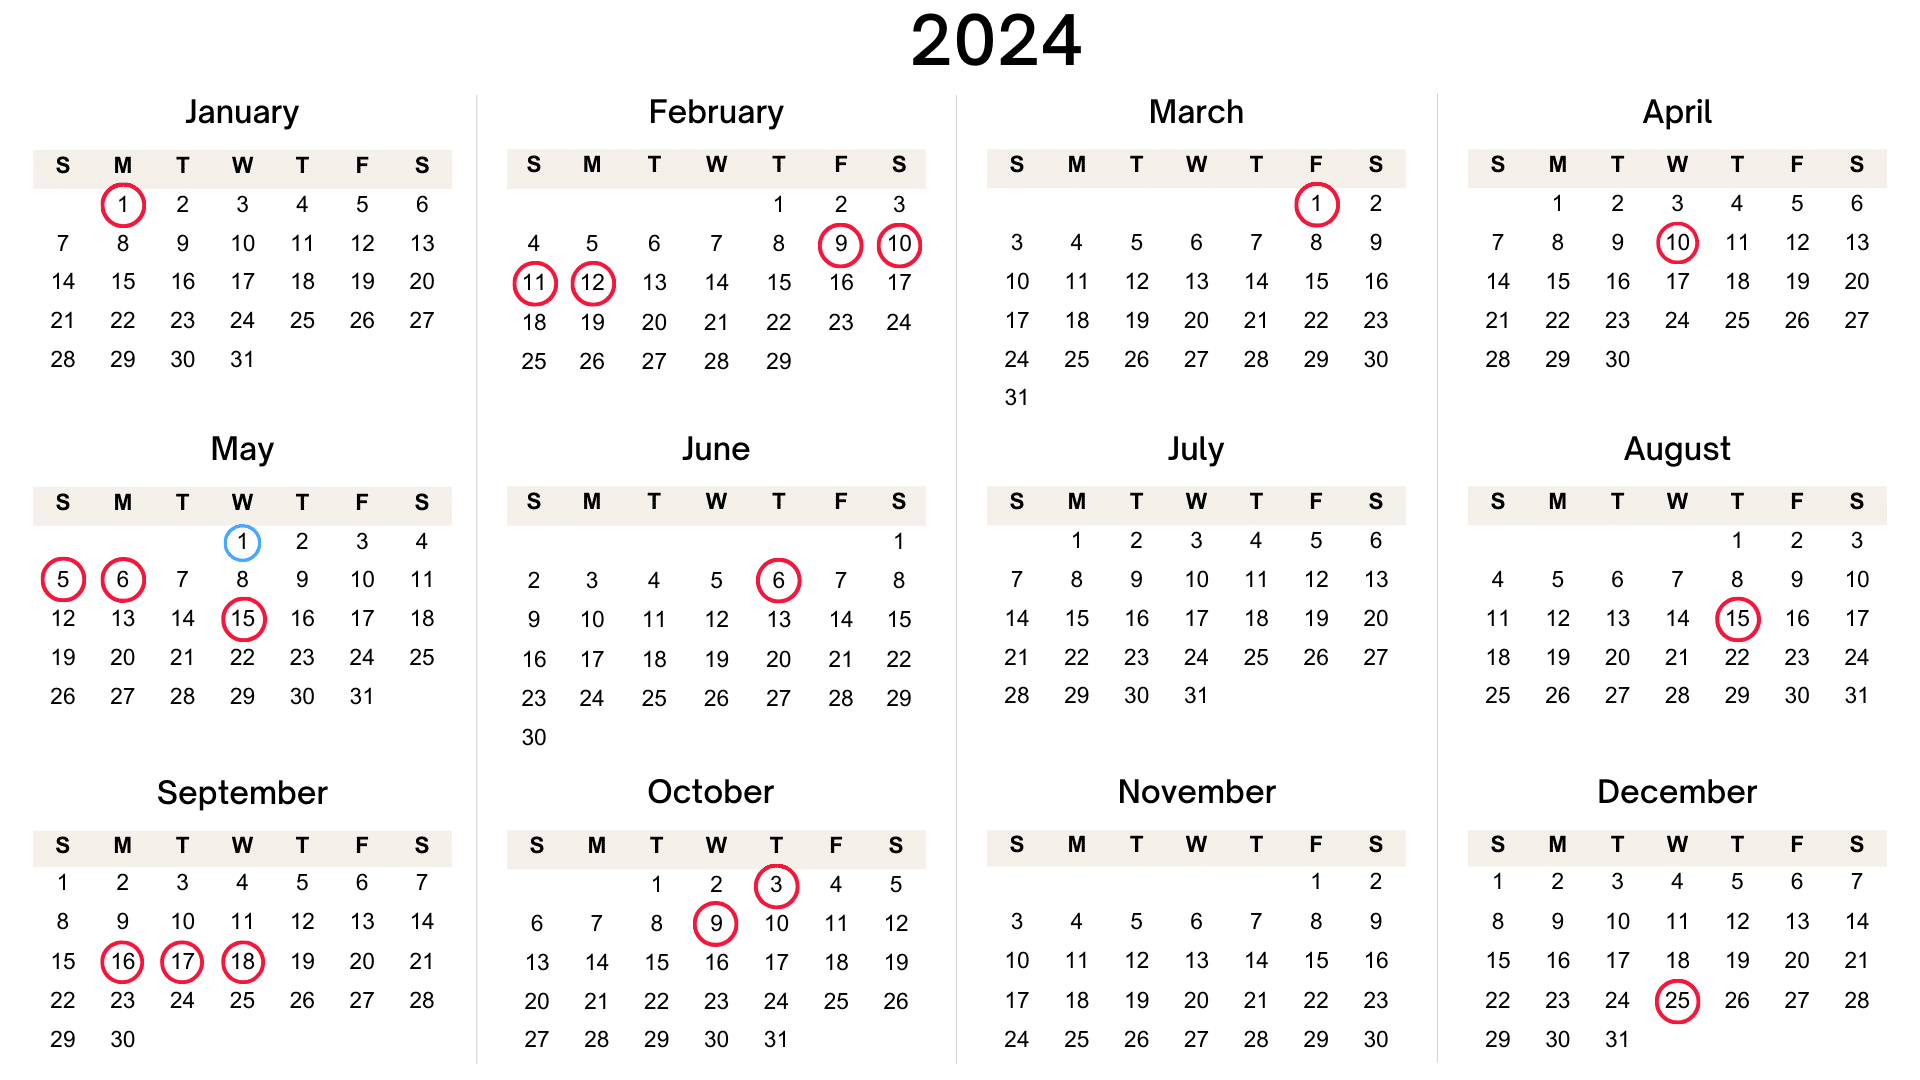 Korean public holiday calendar for 2024